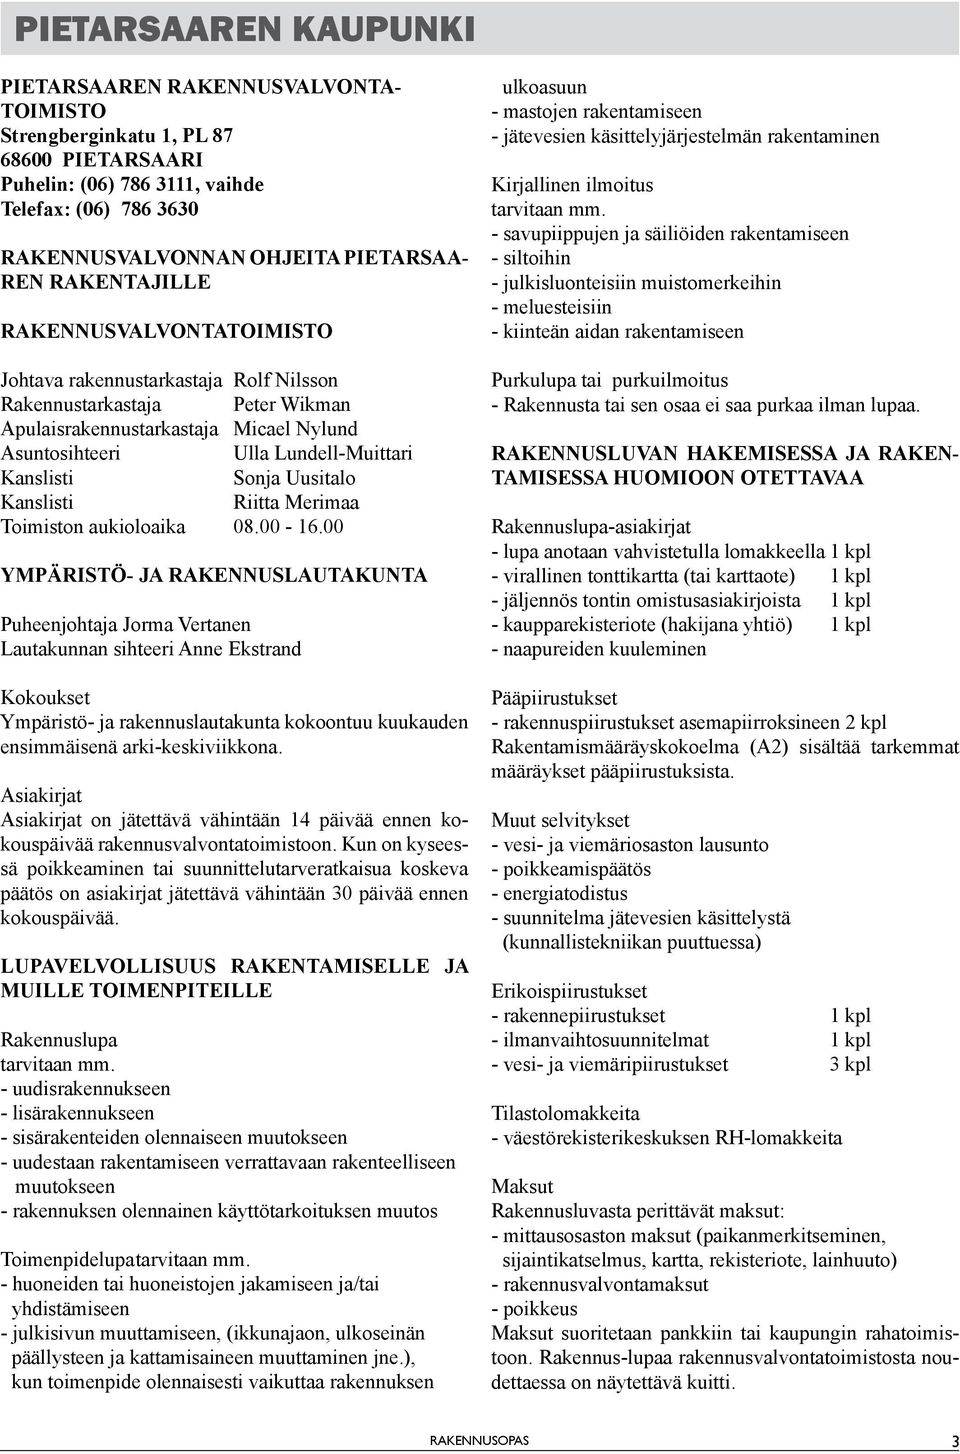 Kanslisti Sonja Uusitalo Kanslisti Riitta Merimaa Toimiston aukioloaika 08.00-16.